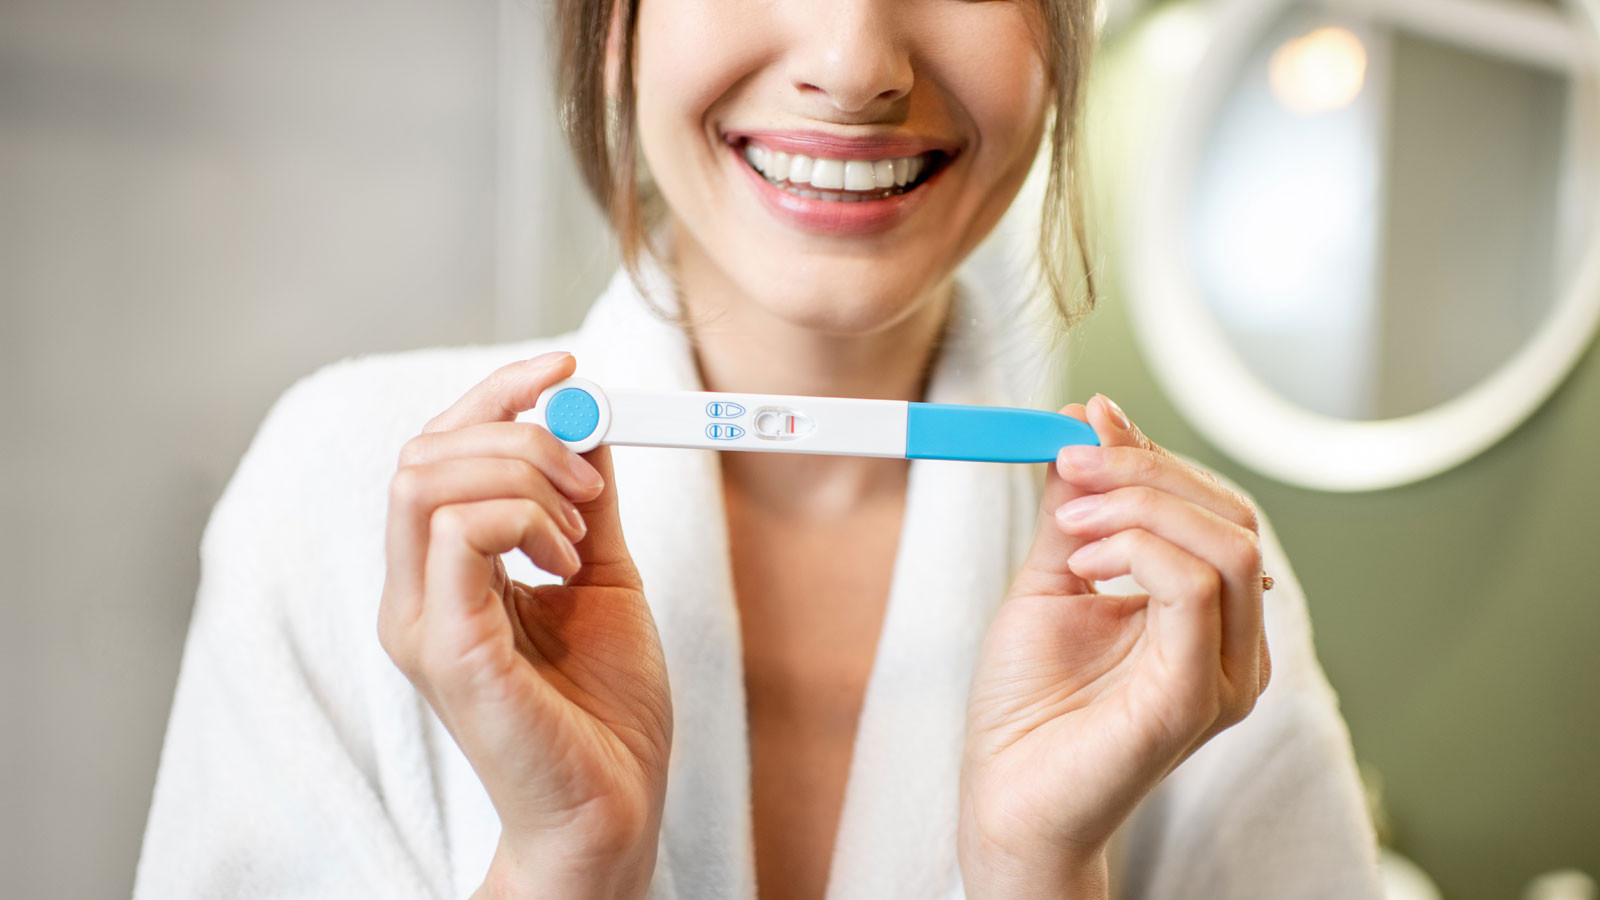 Eczaneden gebelik testi alarak evde hamile olup olmadığınızı öğrenebilirsiniz.